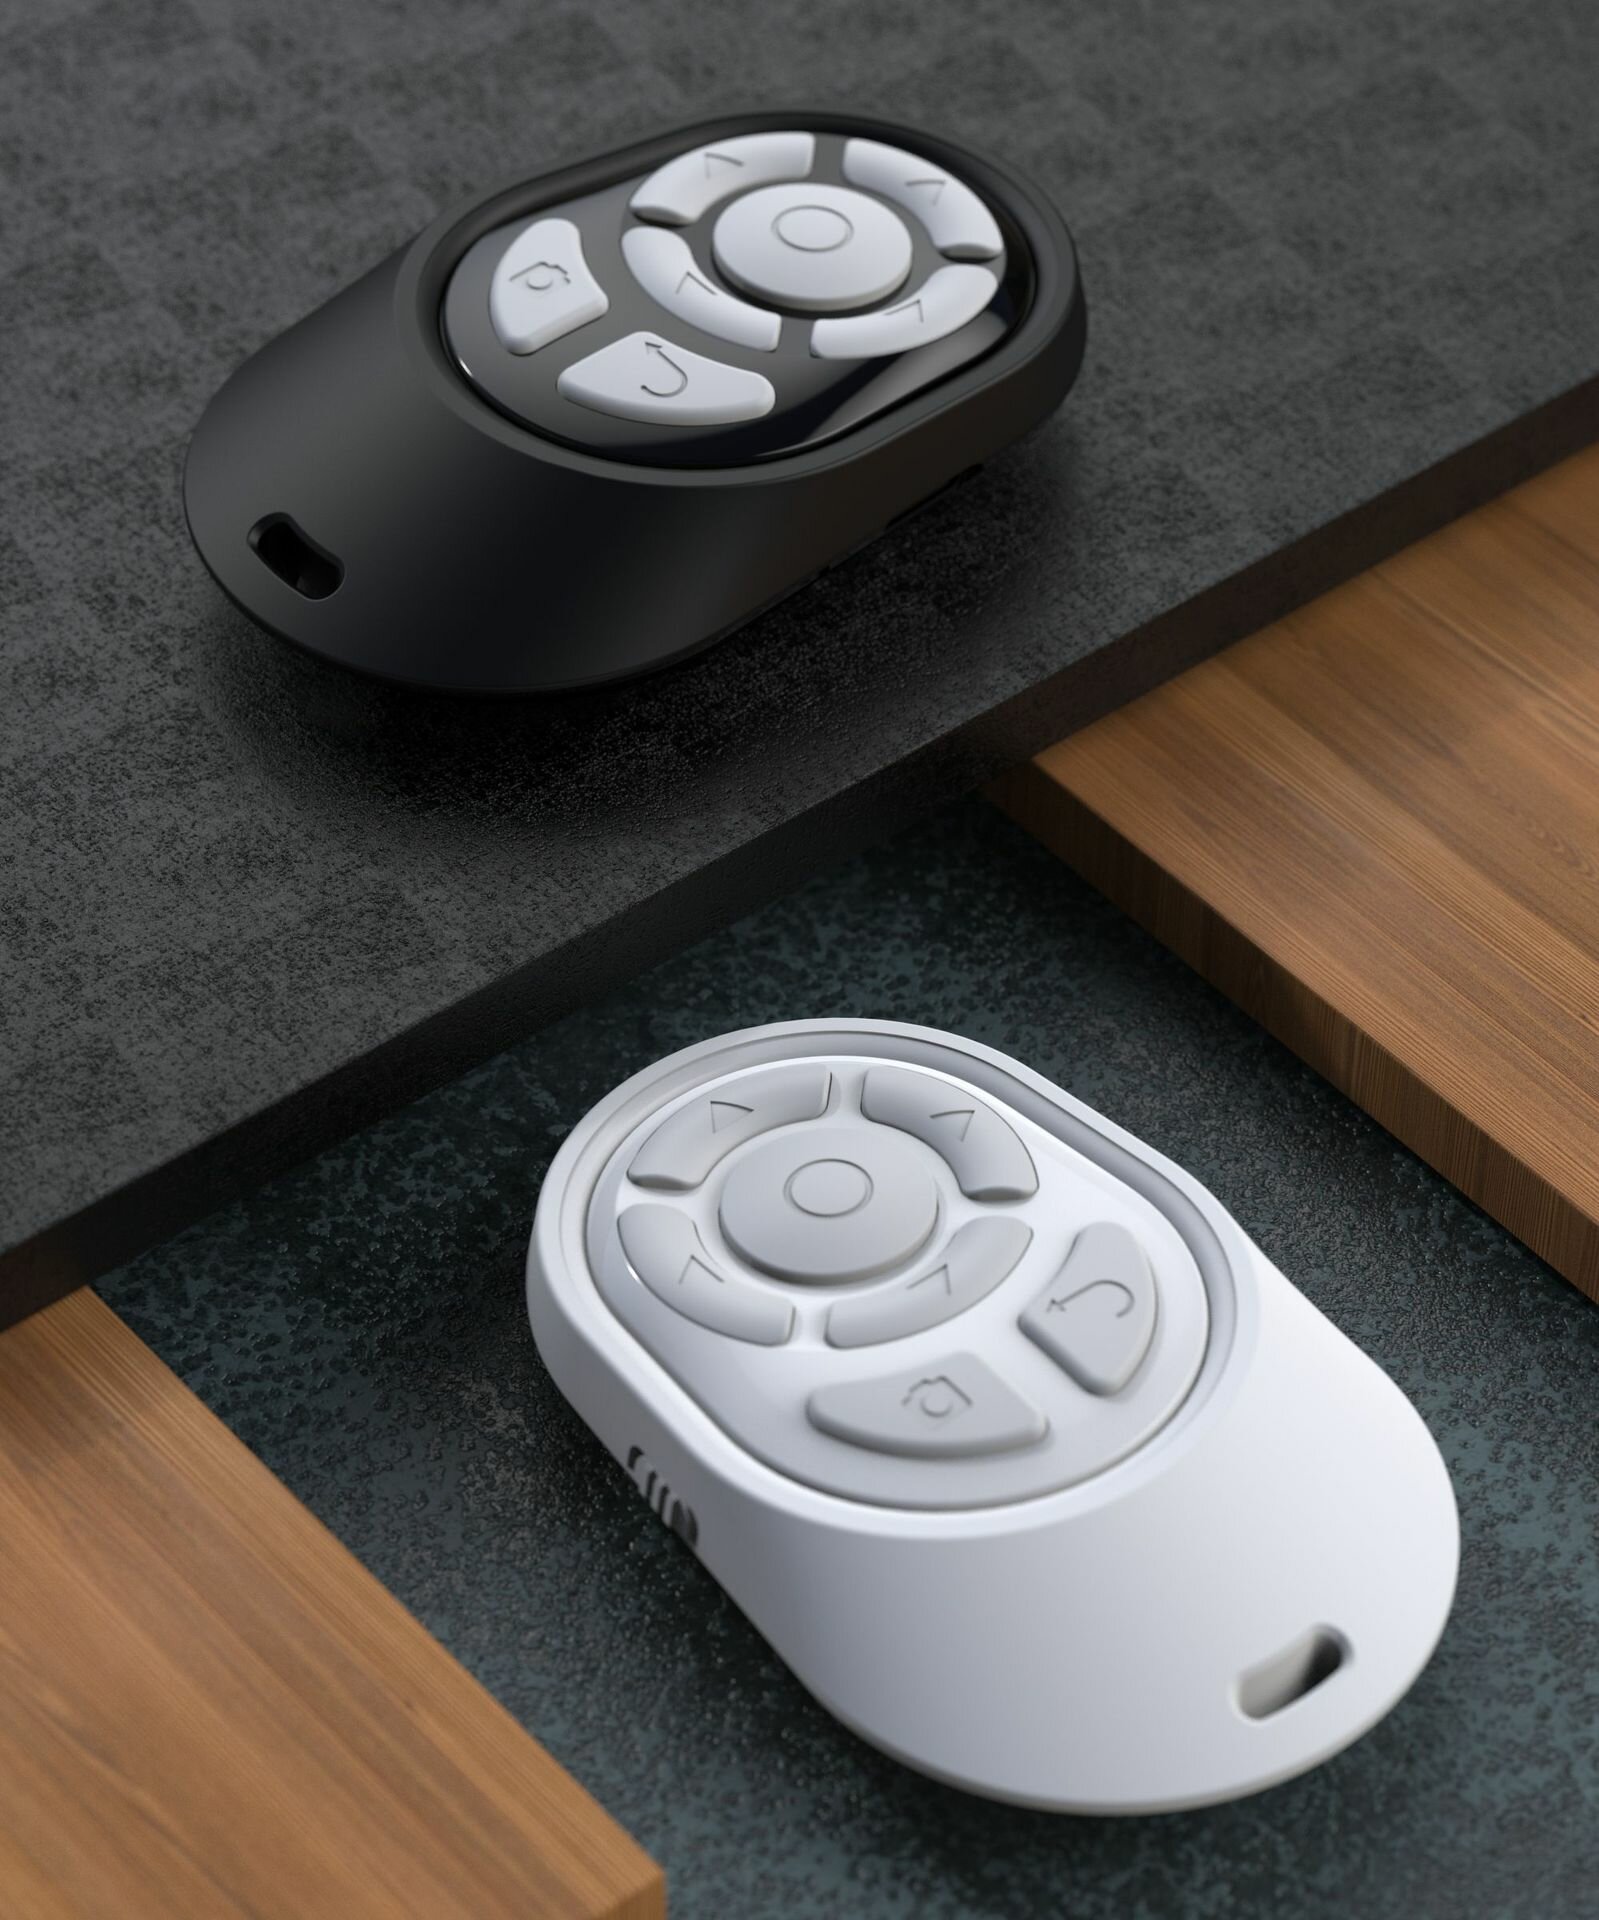 Пульт для селфи / Брелок Bluetooth / Блютуз кнопка для селфи / Беспроводной селфи пульт / Блютуз кнопка для управления камерой телефона